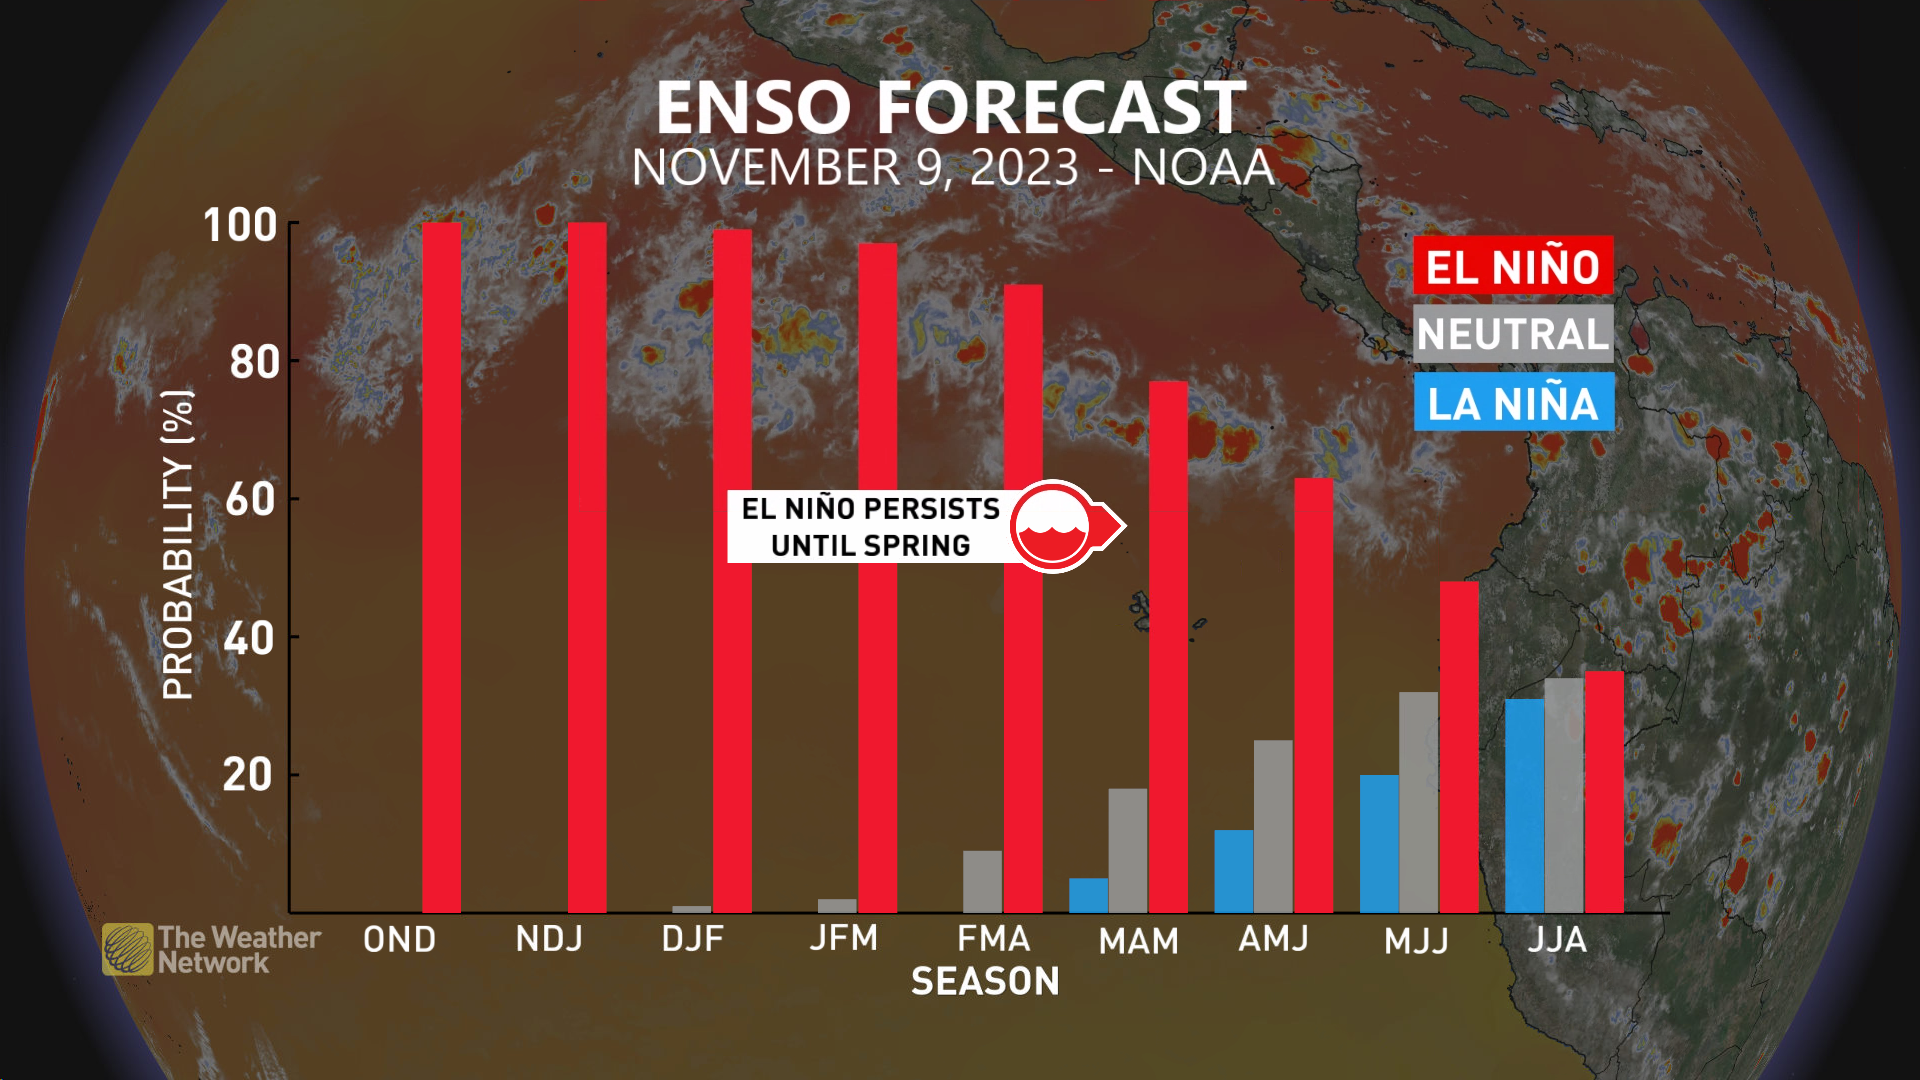 NOAA El Niño Forecast November 2023